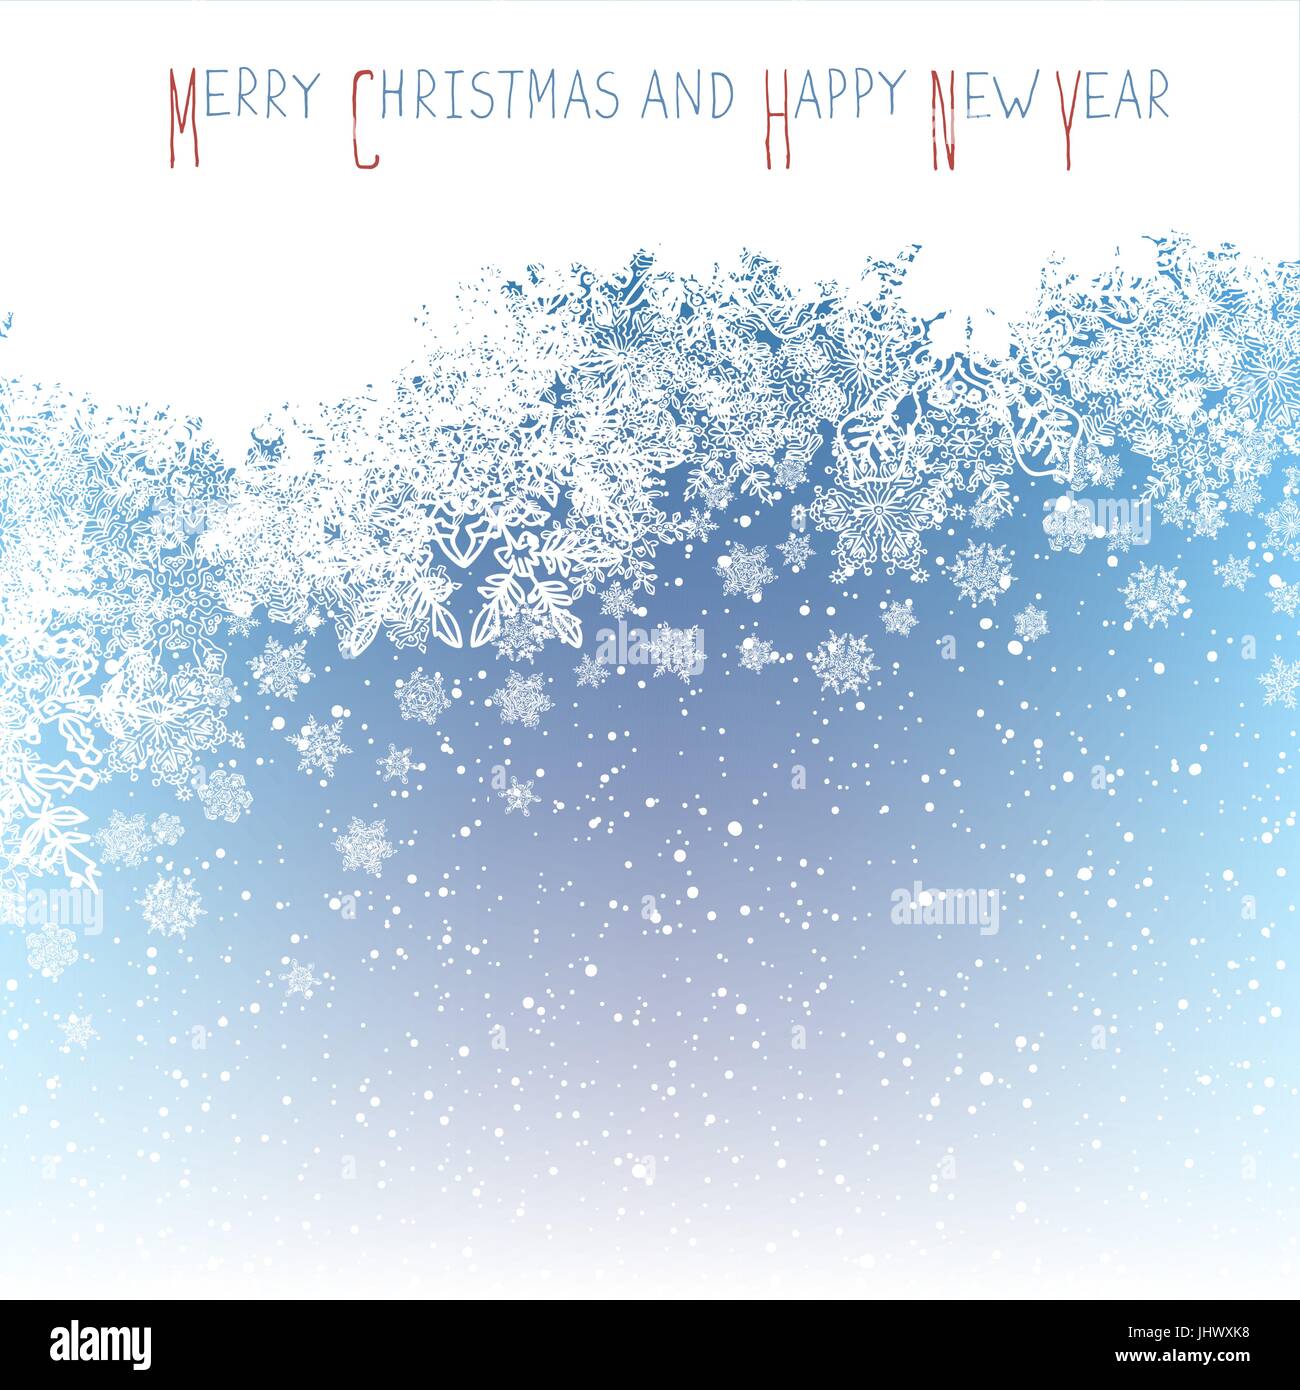 Weihnachts-Postkarte. Neujahrsgrüße. Isoliert auf den Kopf-Bereich für Gruß. Blaue Winter Schneefall Hintergrund. Vektor-Illustration. Stock Vektor